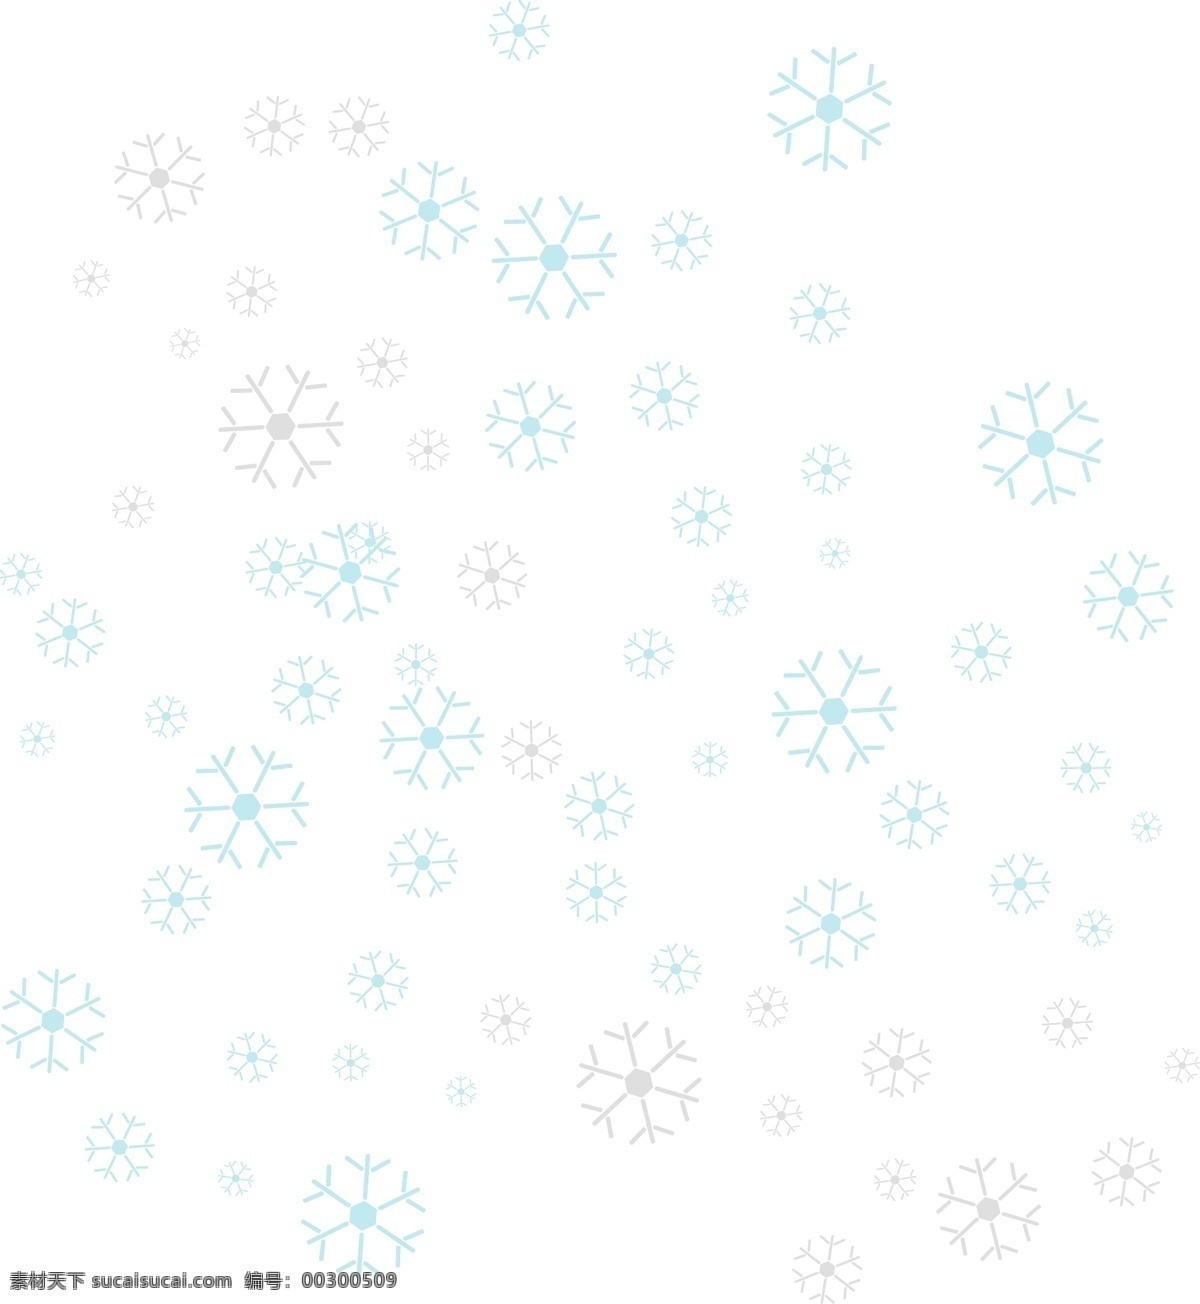 手绘 雪花 浅色 白雪 漂浮 漂浮雪花 卡通雪花 蓝色雪花 圣诞雪花 浅白雪花